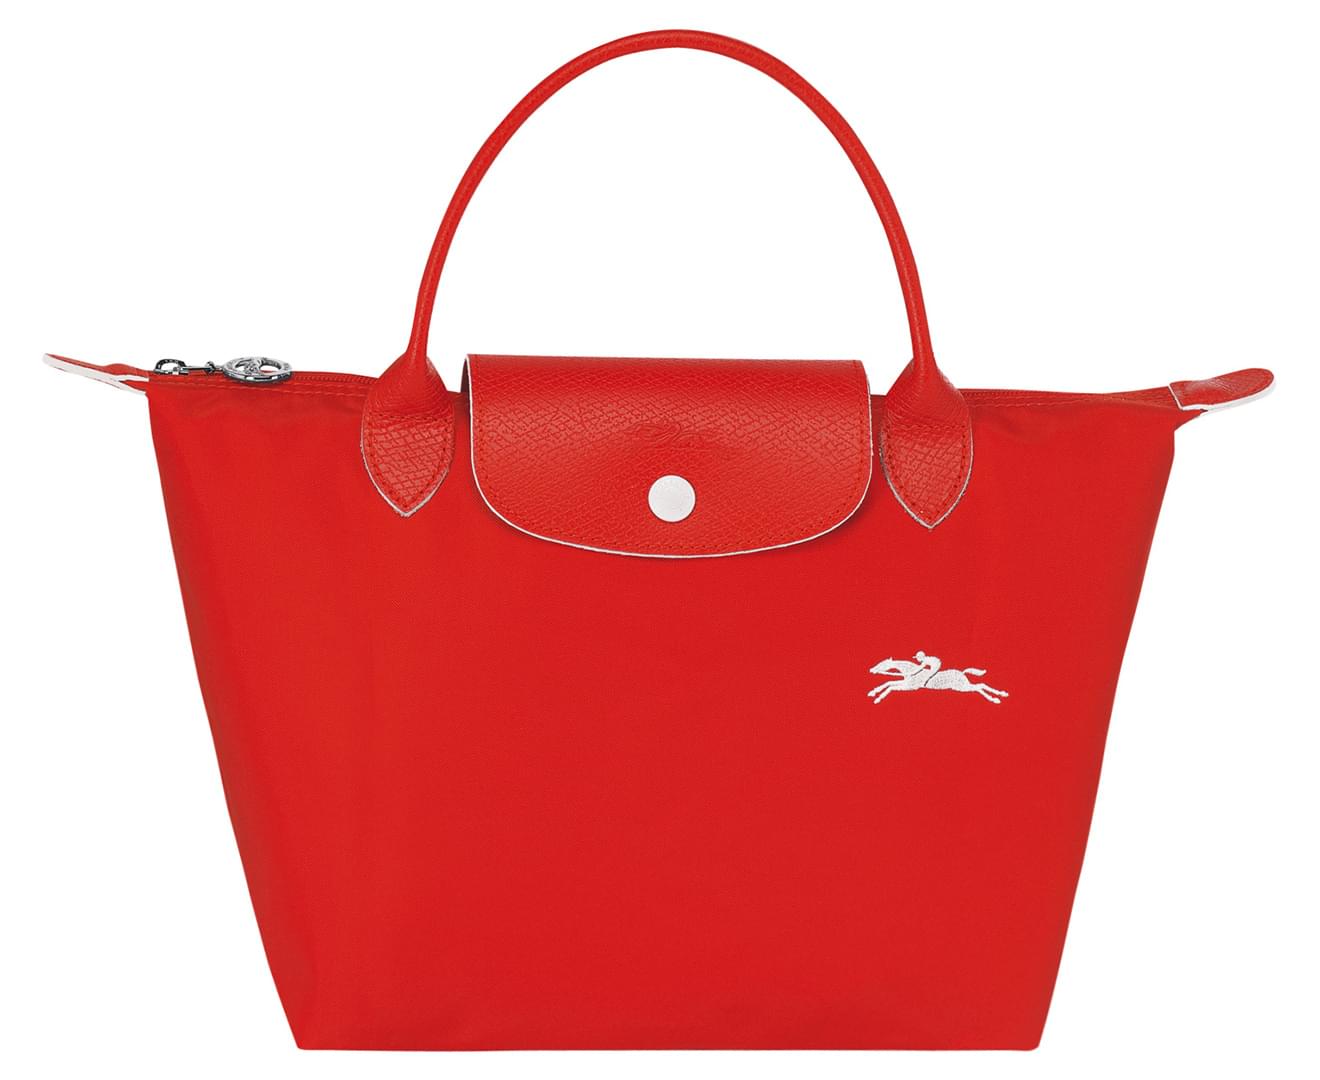 Longchamp Le Pliage Top Handle Bag - Vermilion